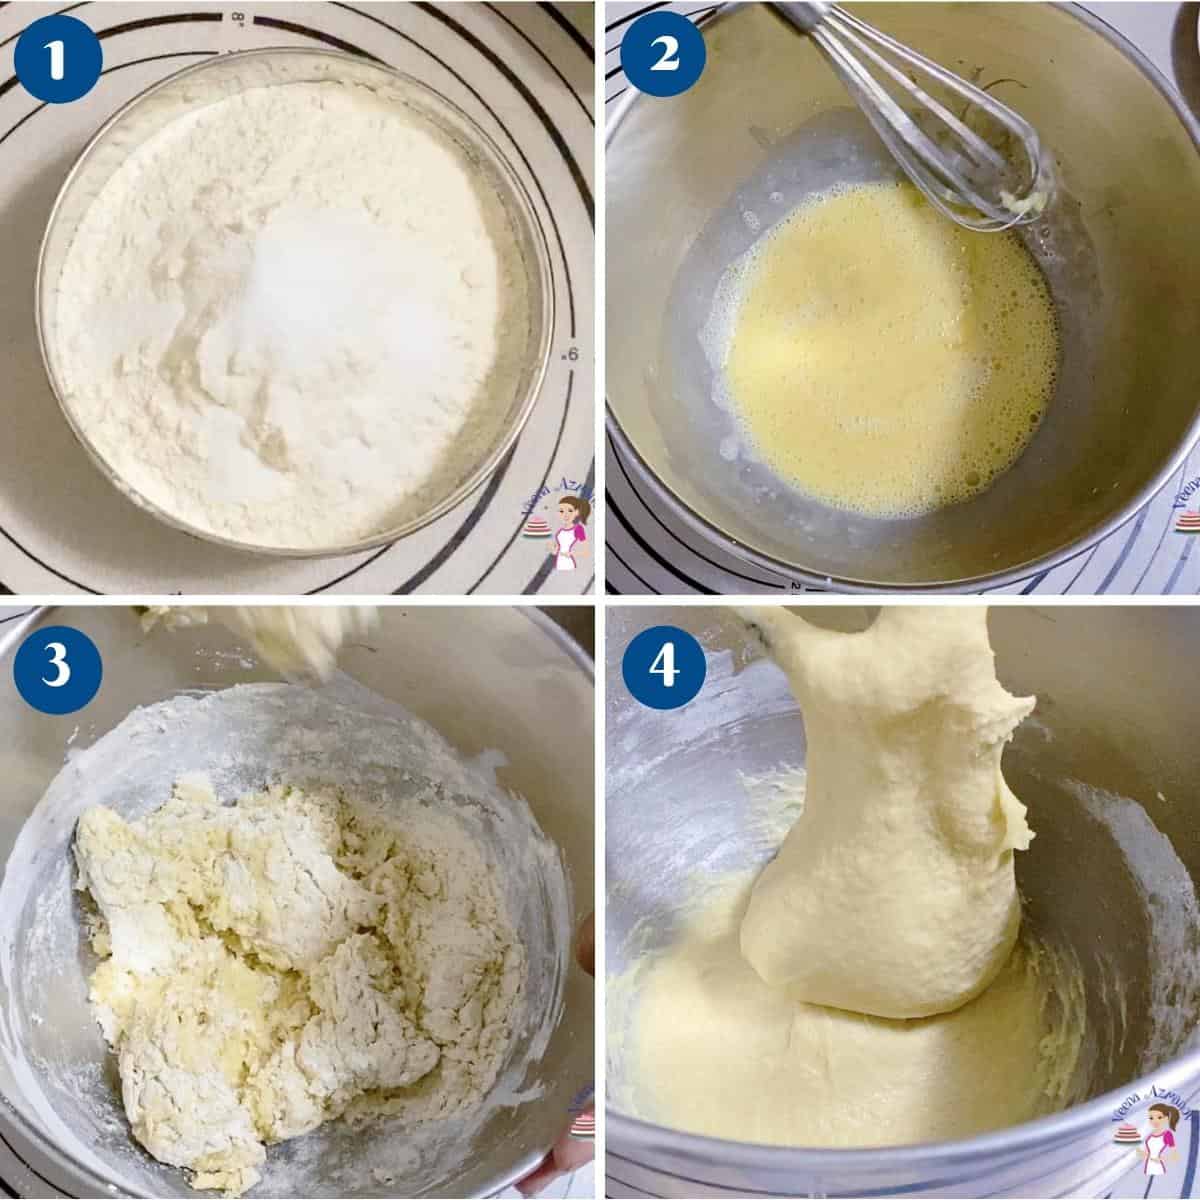 Progress pictures for making brioche dough.